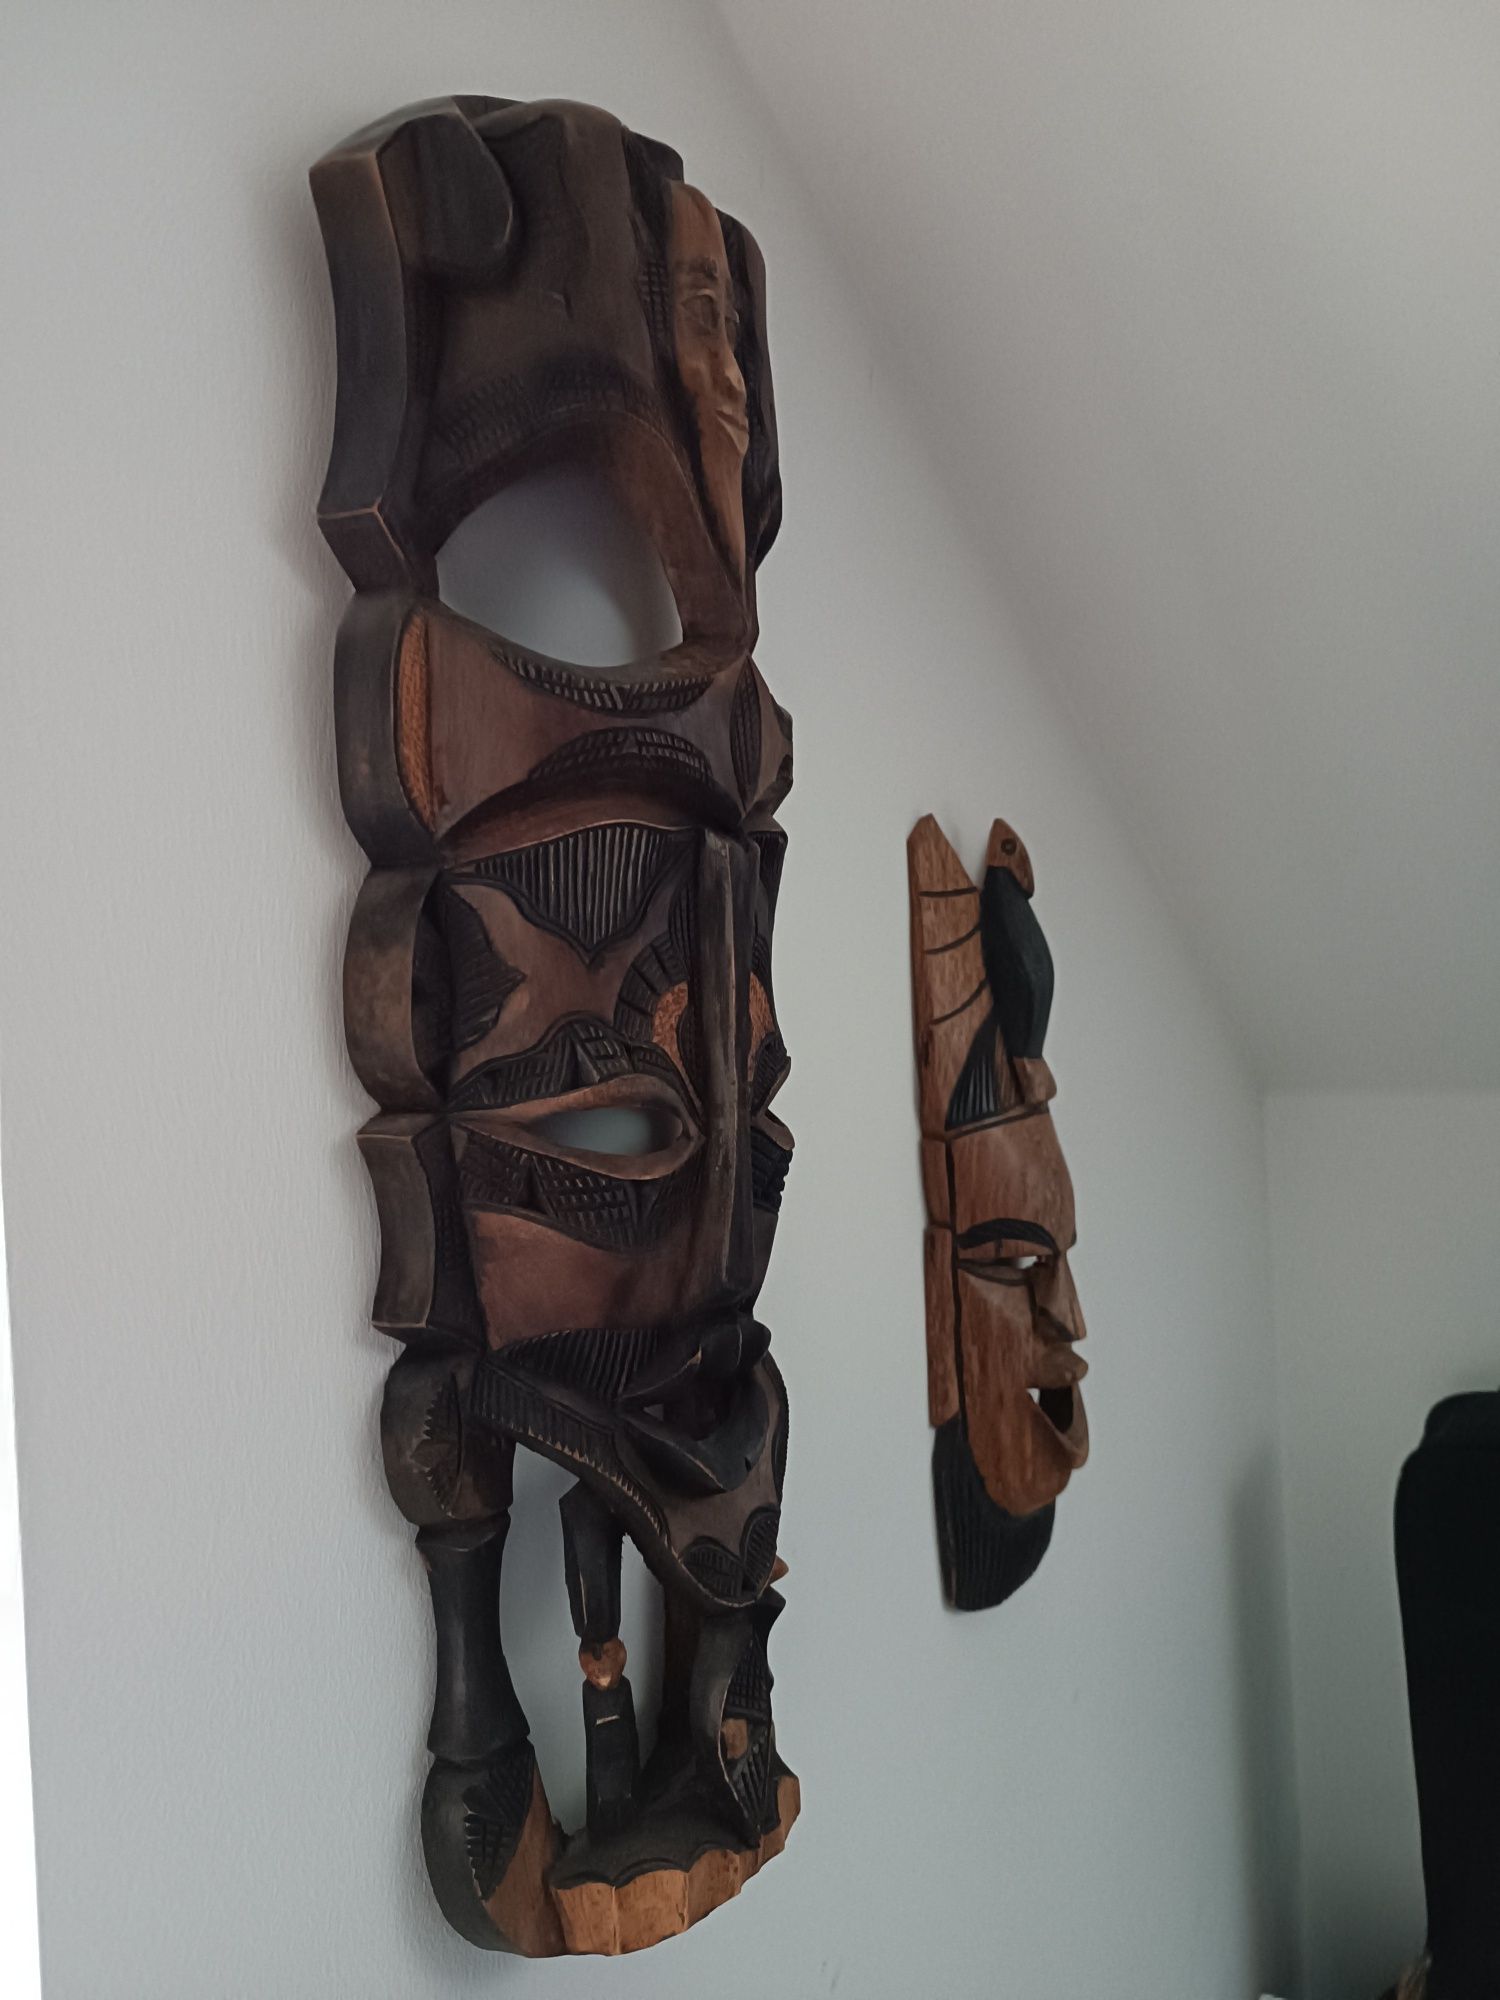 Maska afrykańska duża, 60 cm wysokości